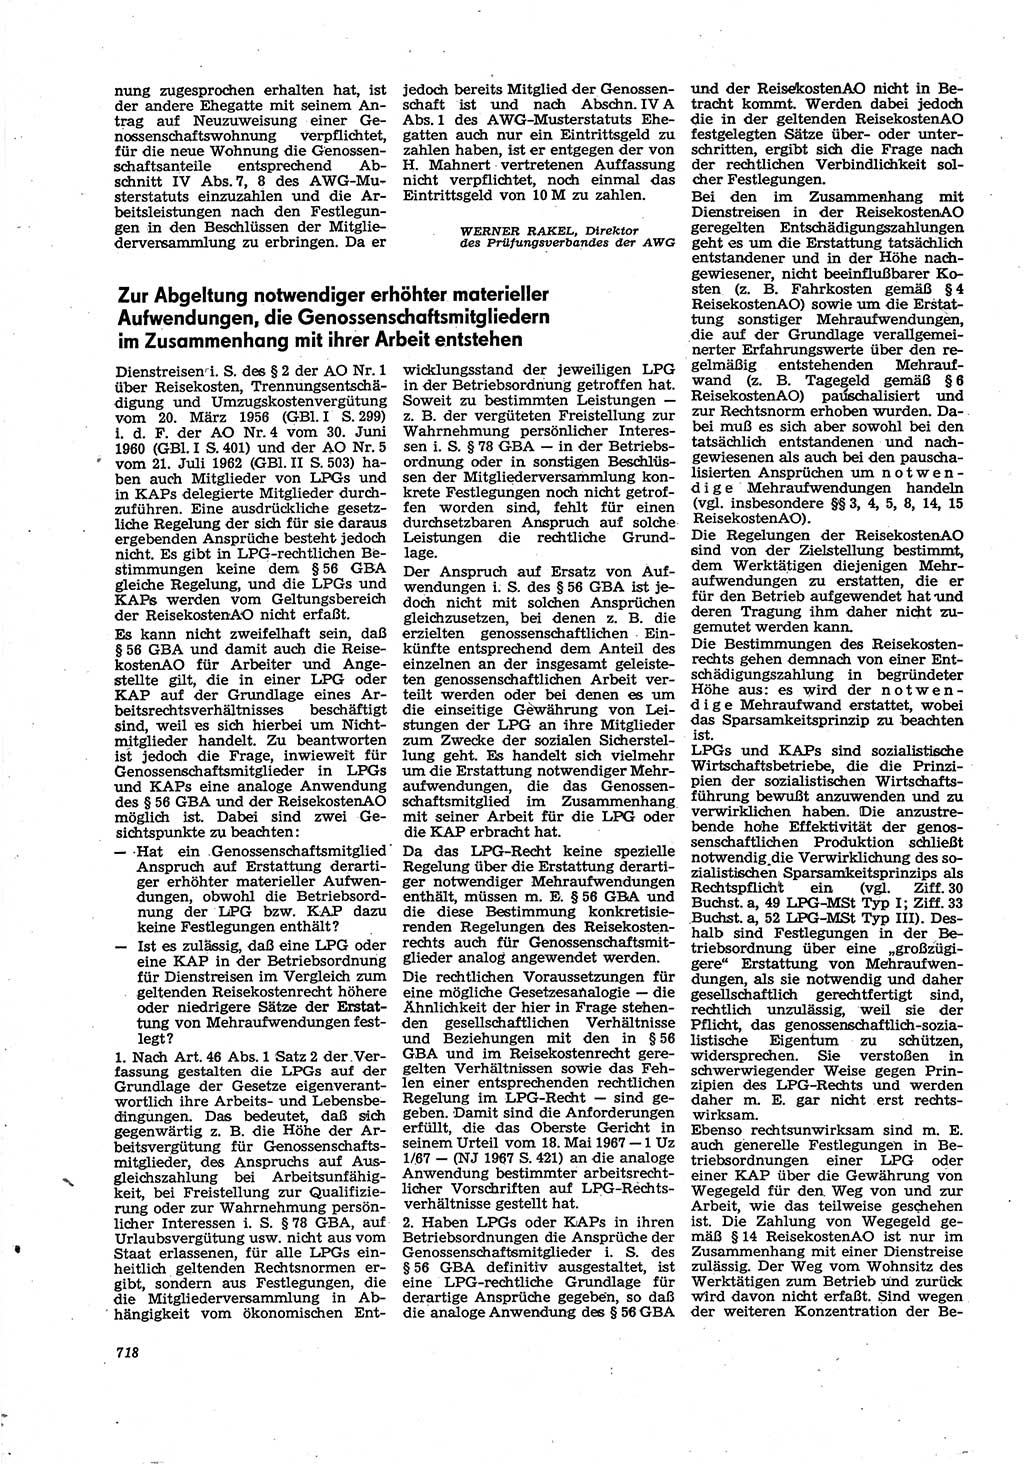 Neue Justiz (NJ), Zeitschrift für Recht und Rechtswissenschaft [Deutsche Demokratische Republik (DDR)], 30. Jahrgang 1976, Seite 718 (NJ DDR 1976, S. 718)